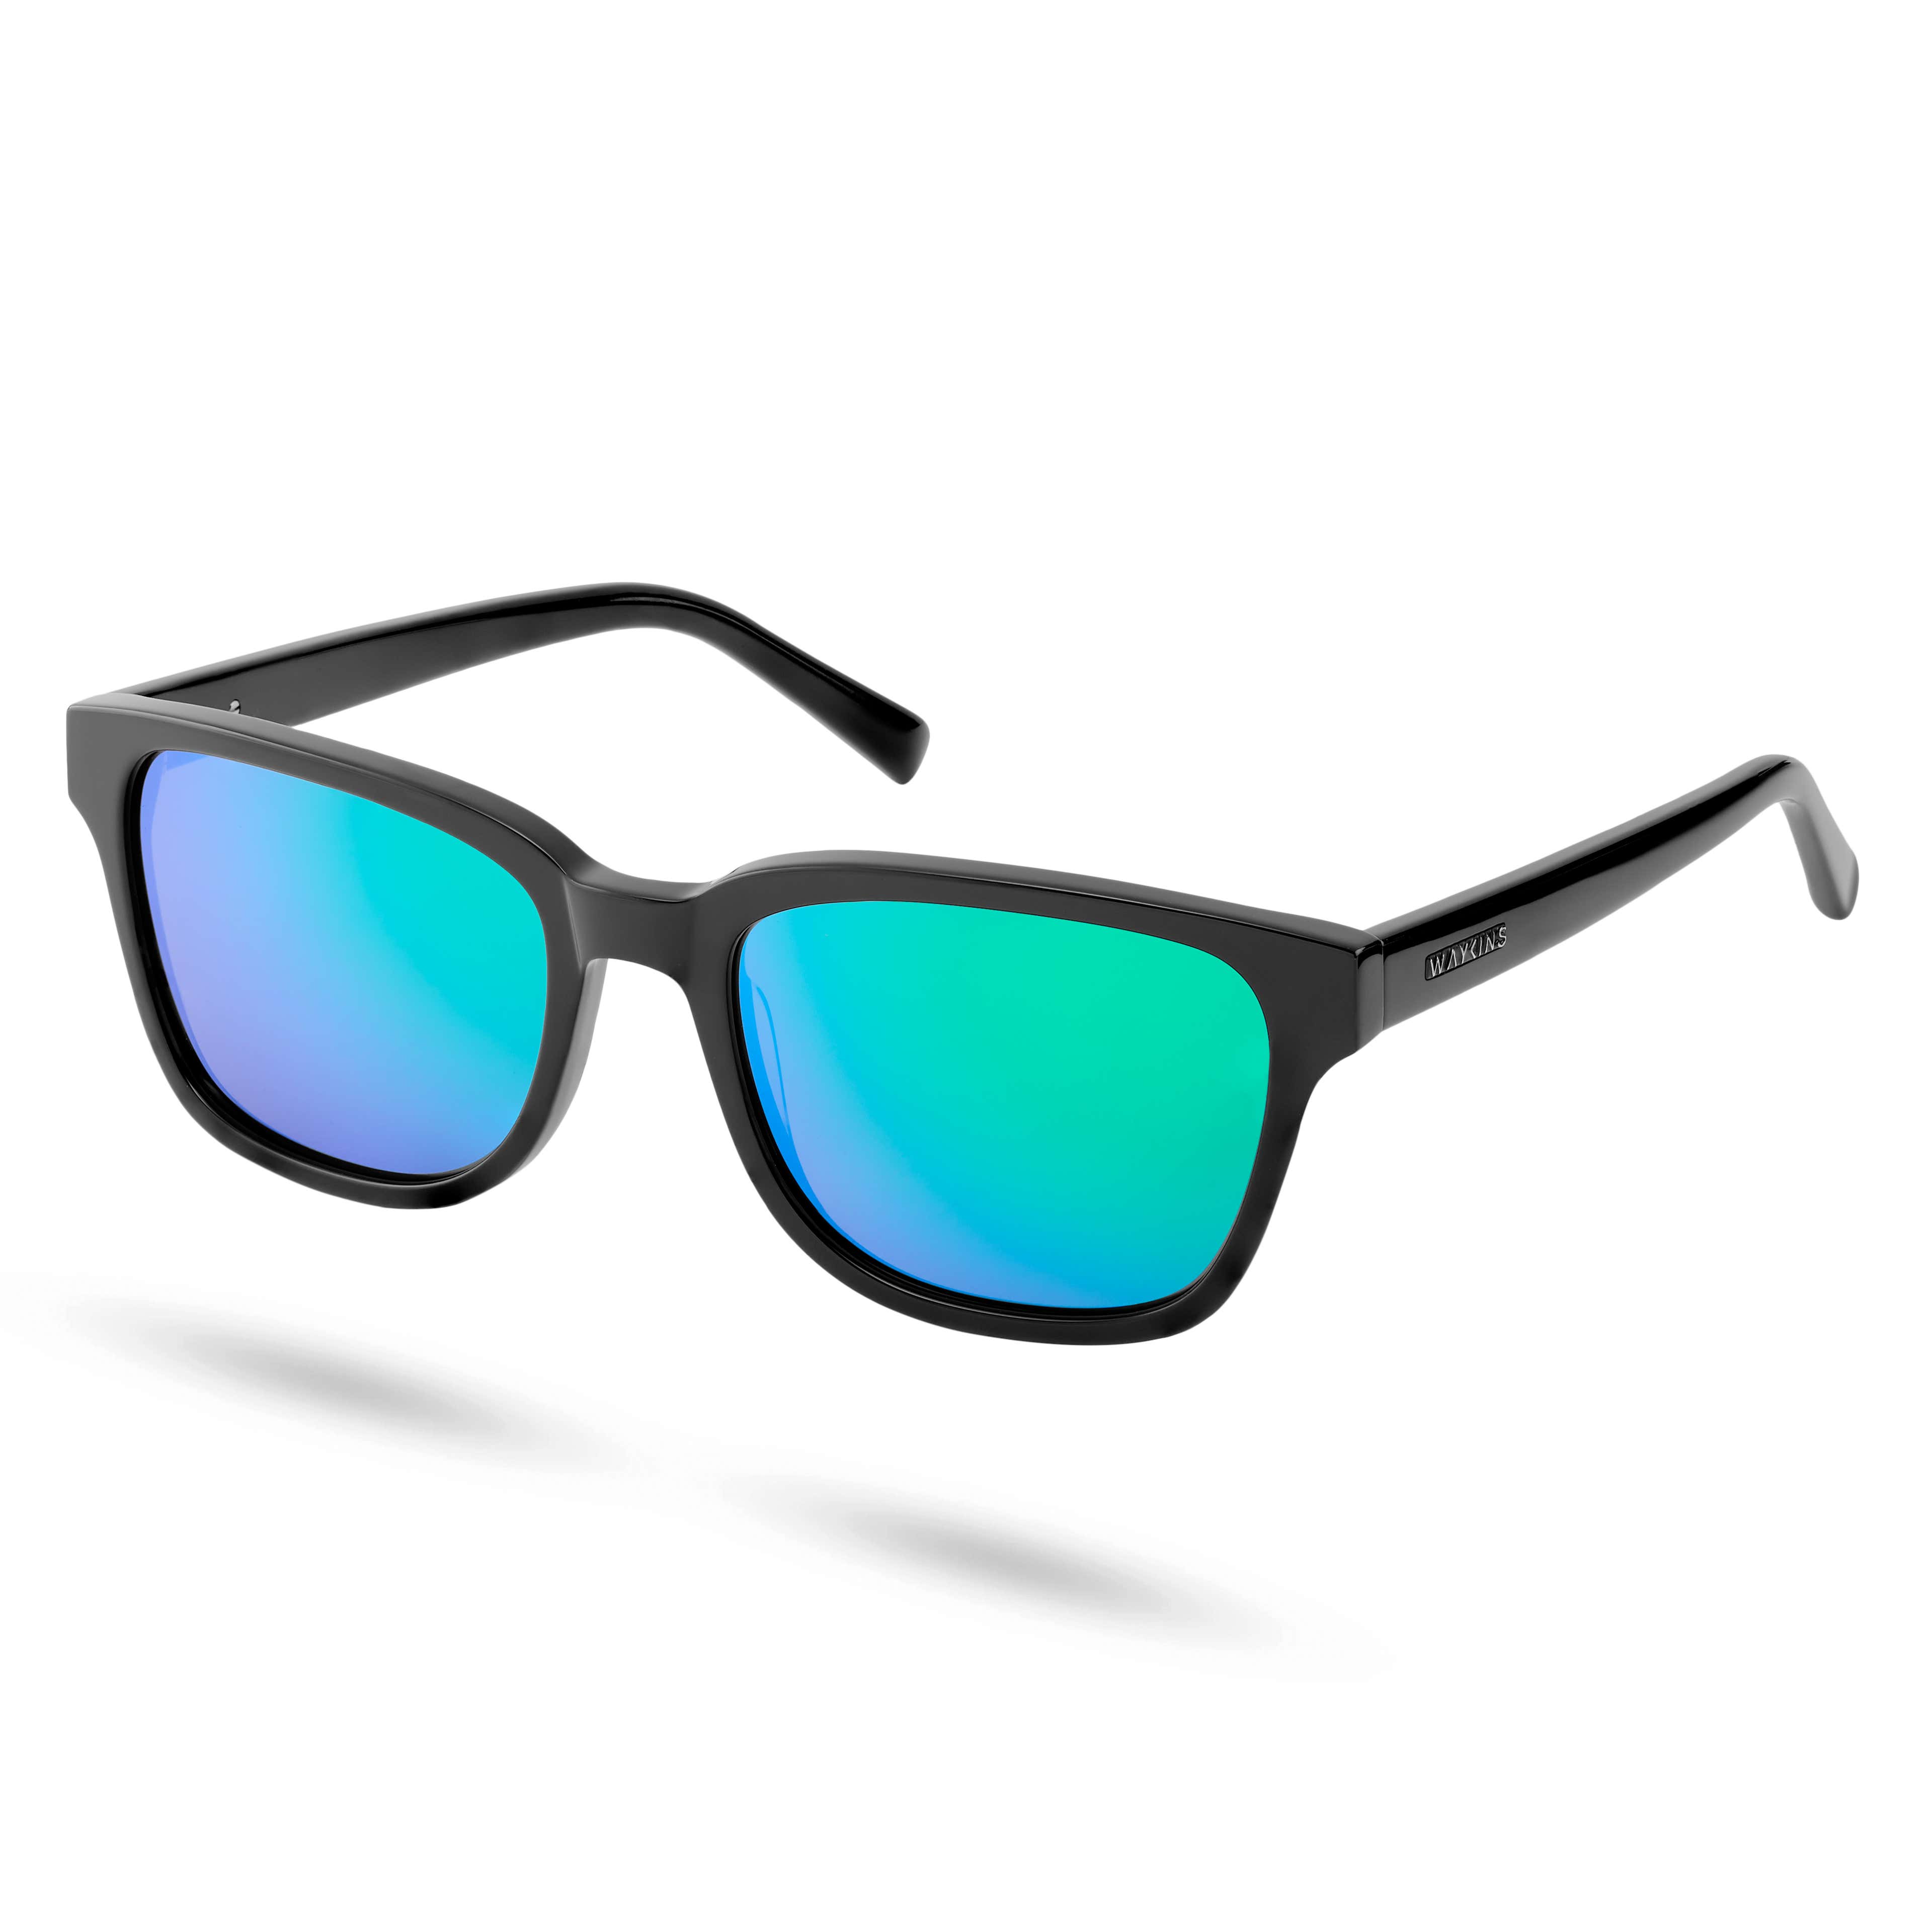 Wilmer Thea Black & Blue-Green Mirror Polarized Sunglasses